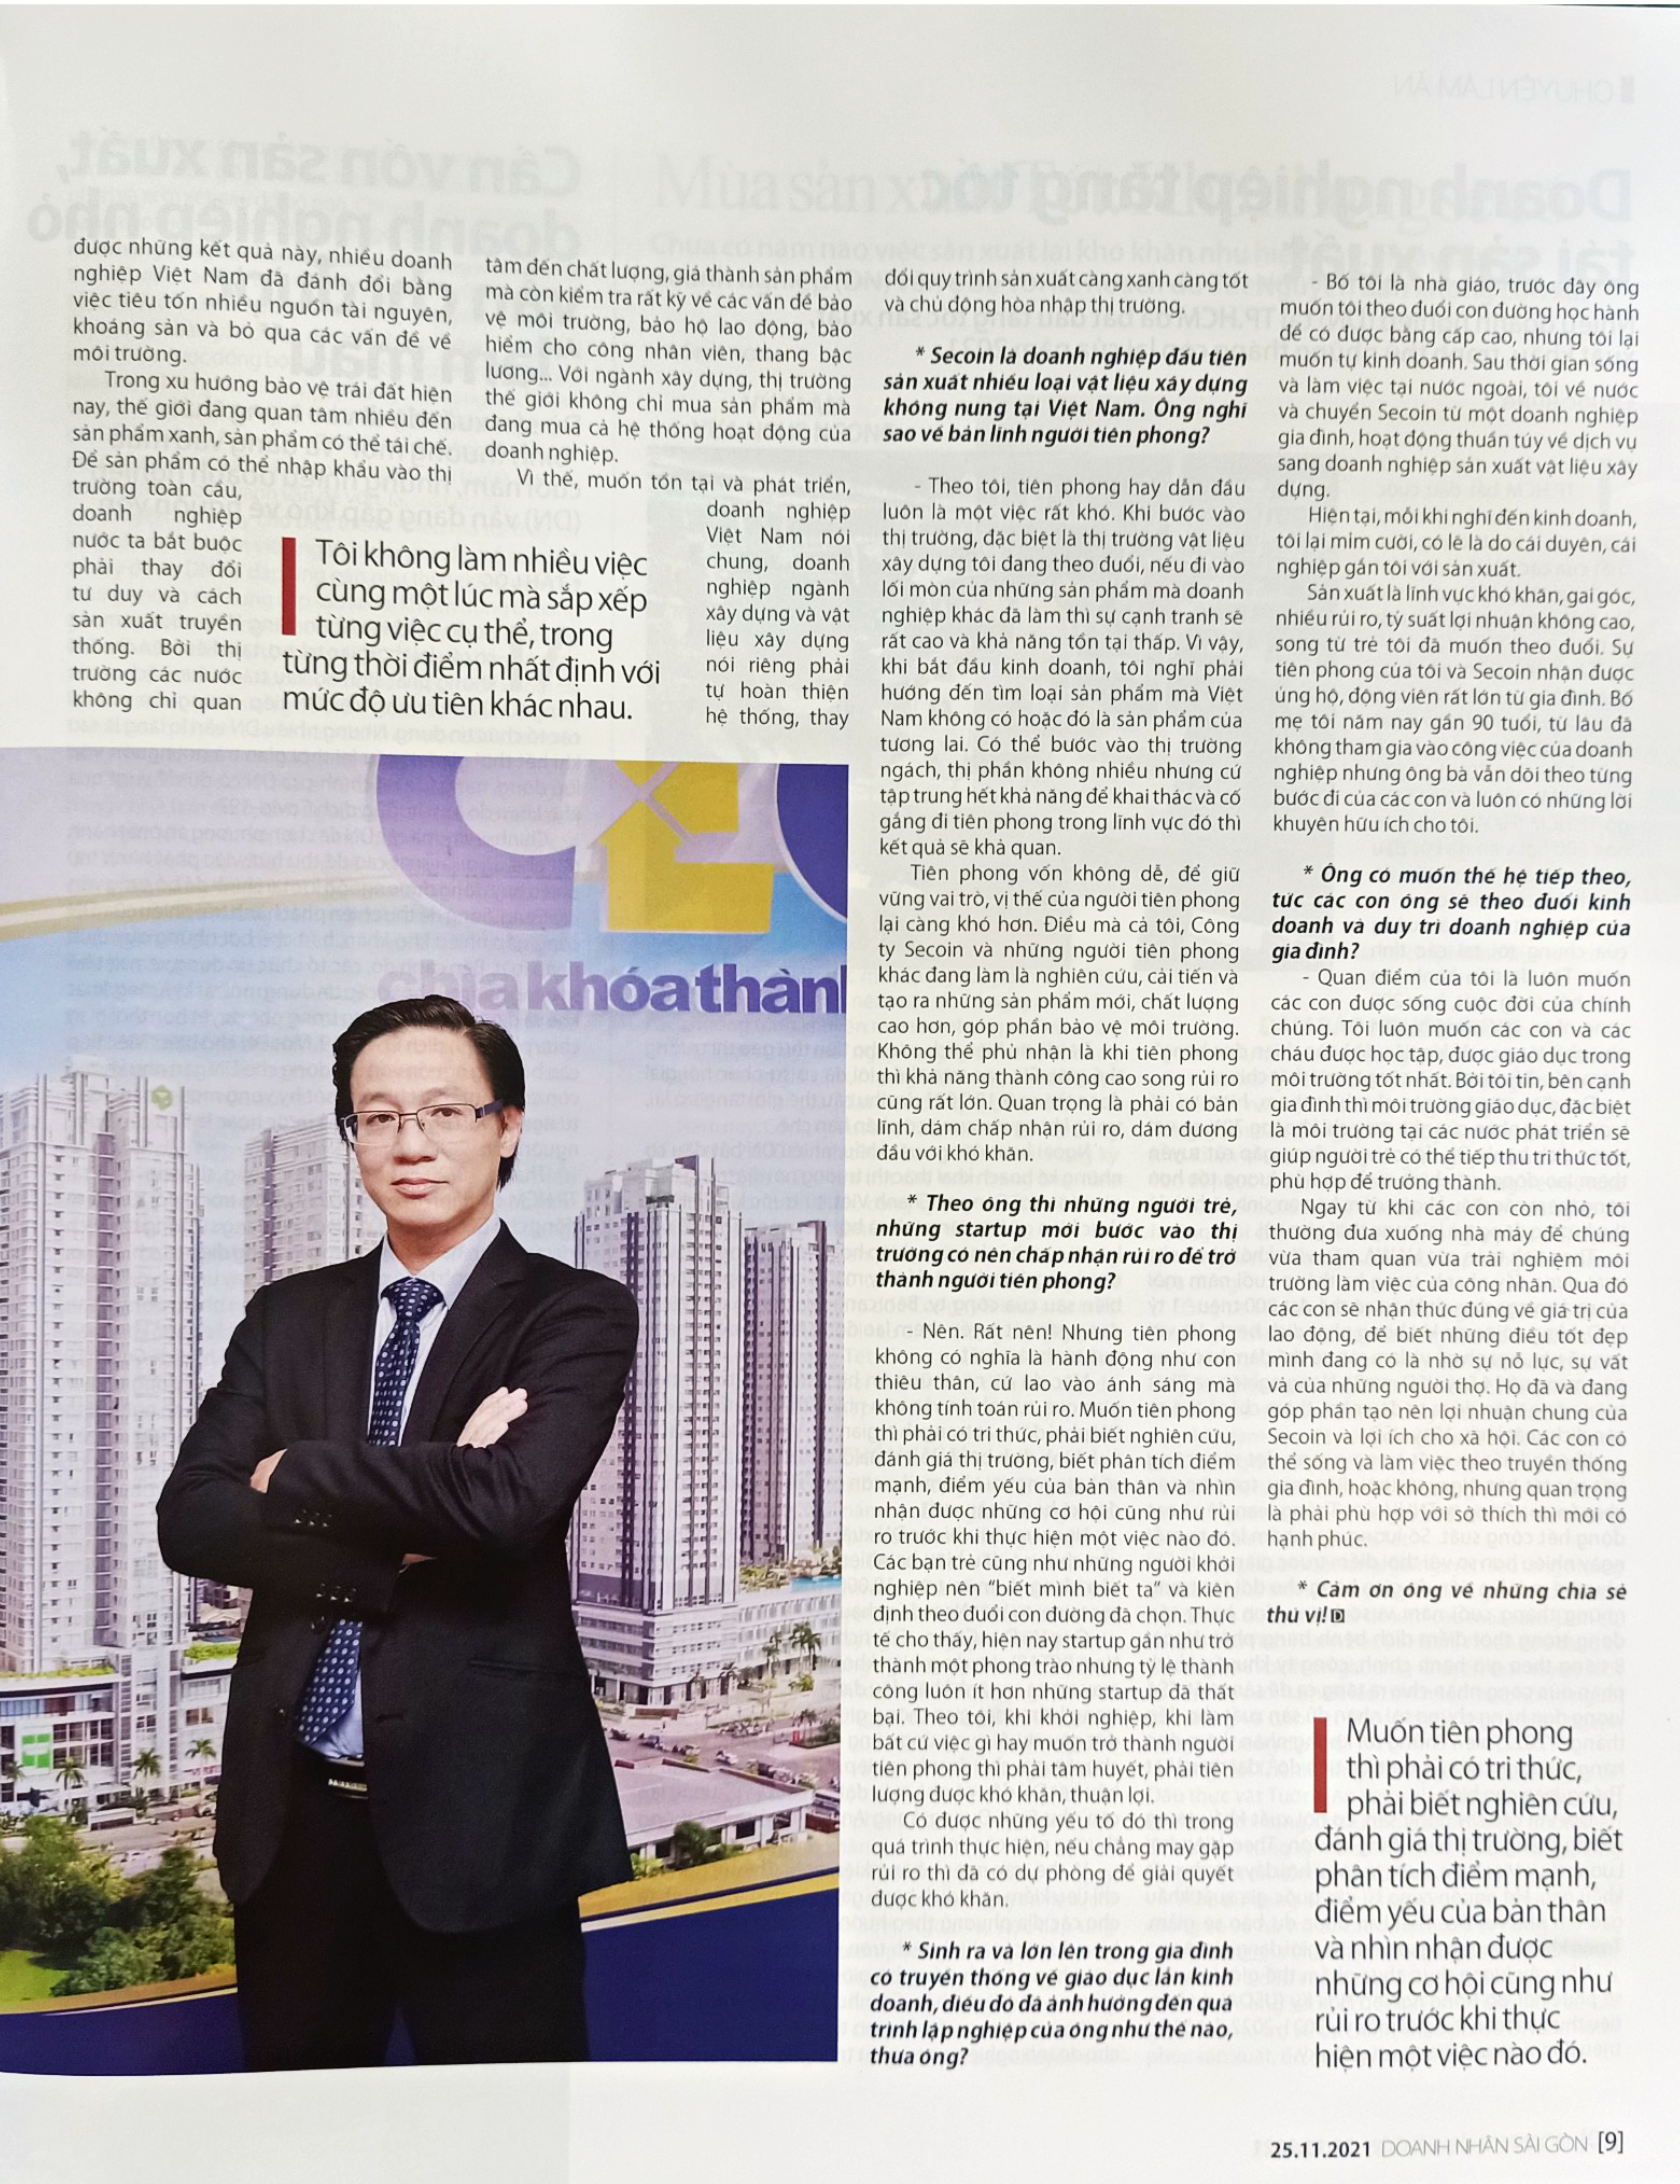 Ông Đinh Hồng Kỳ - Chủ tịch HĐQT Công ty Secoin: Muốn tiên phong thì phải có tri thức và bản lĩnh